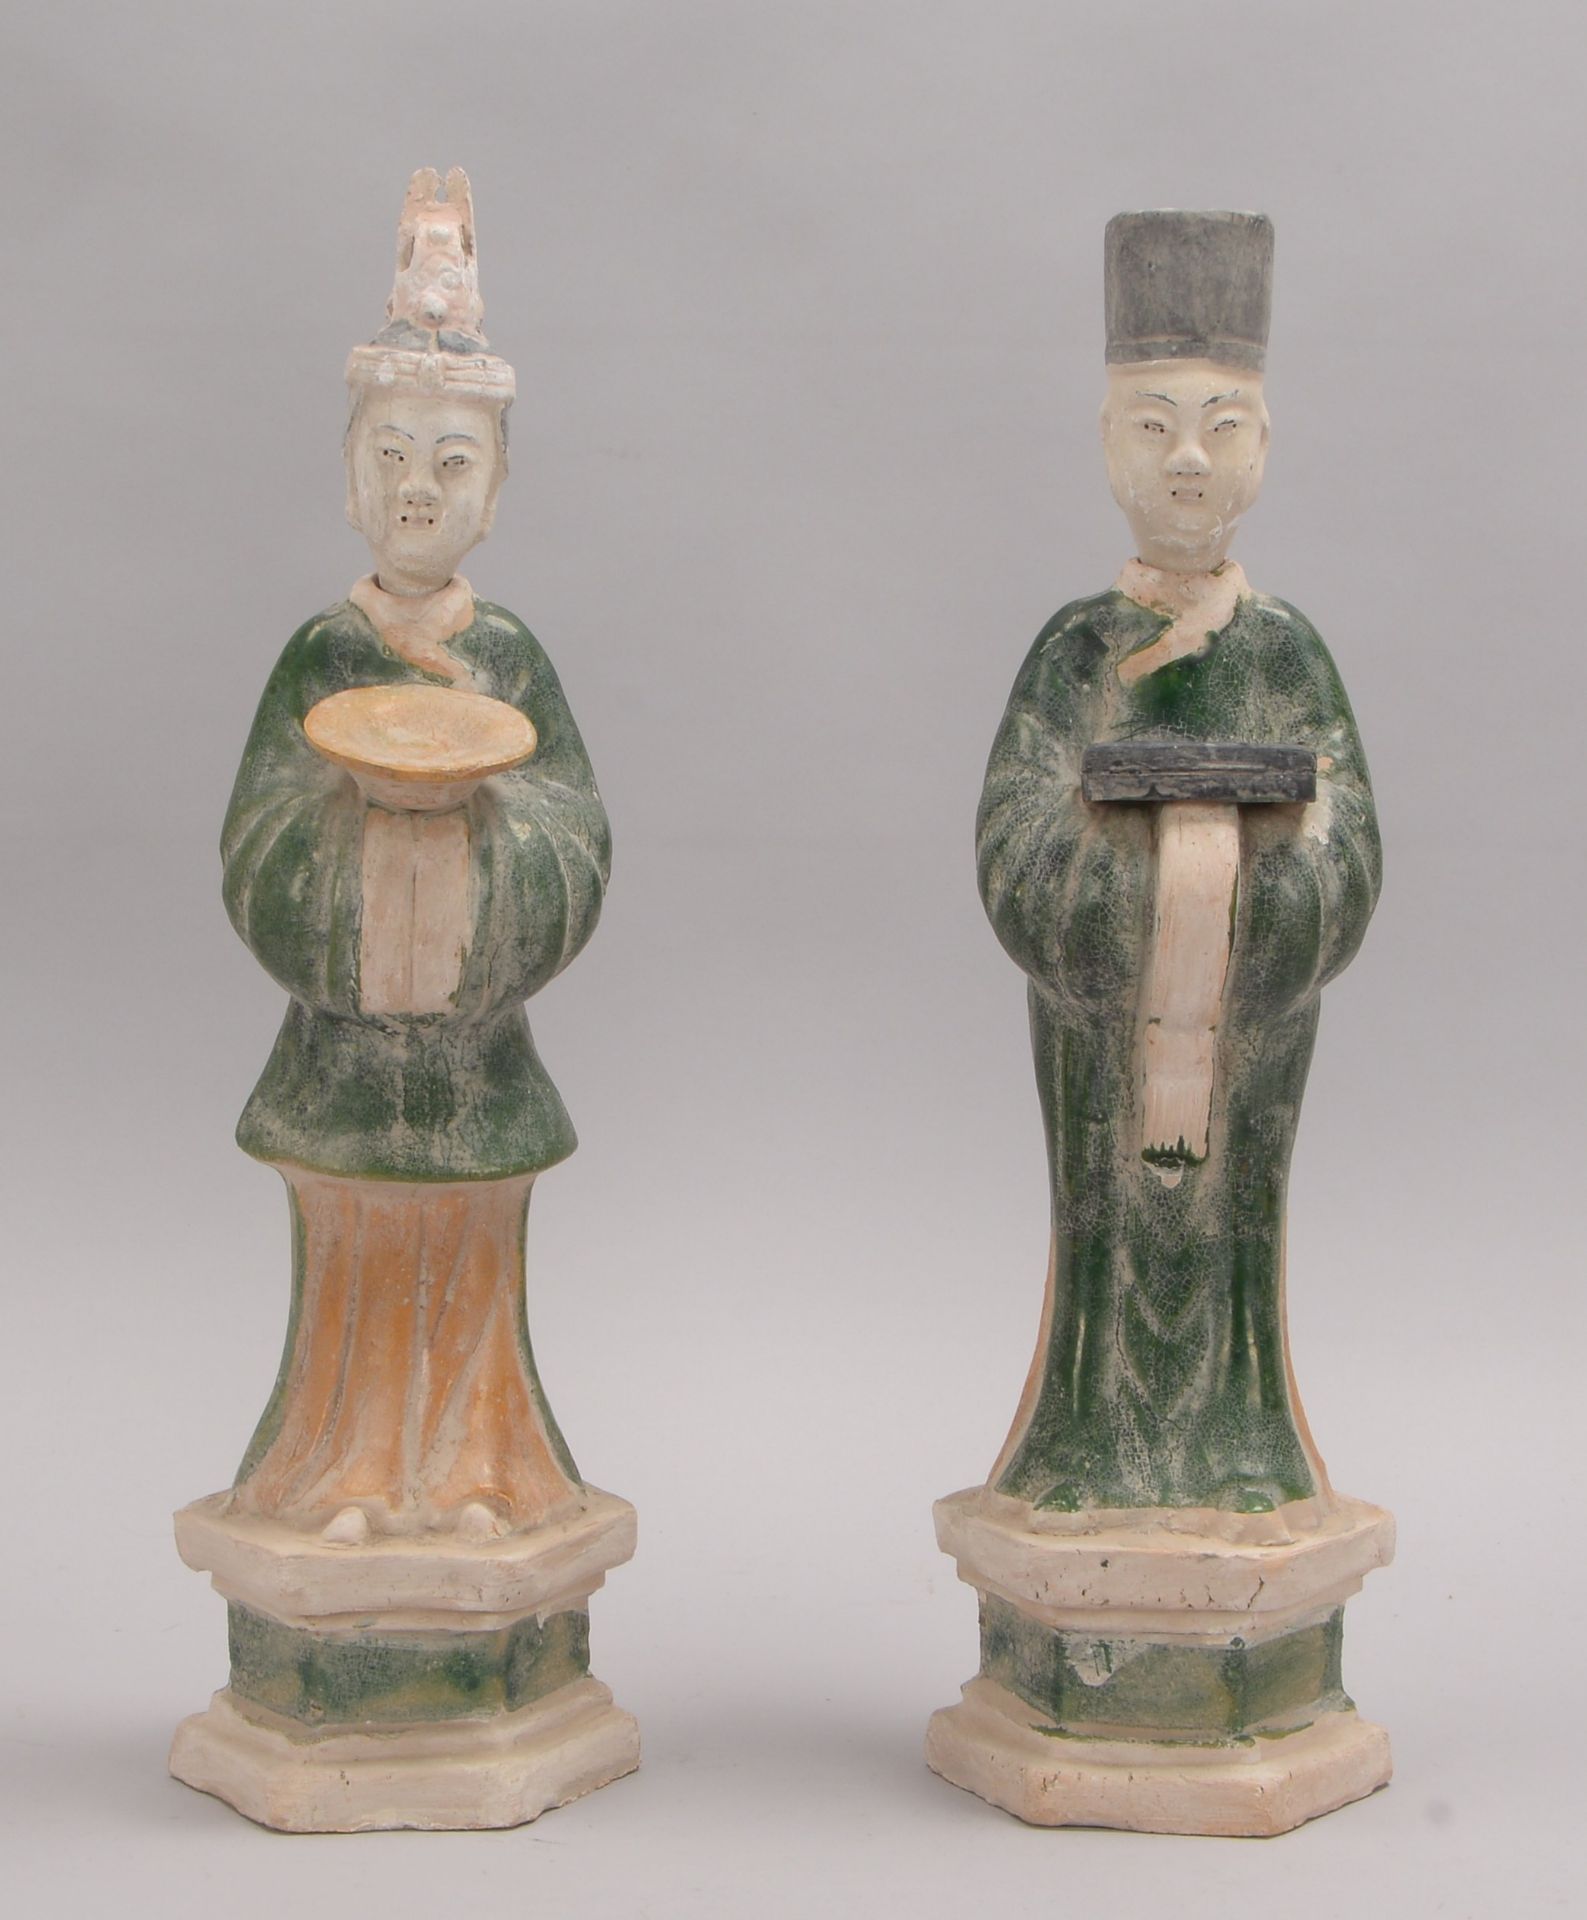 Paar Keramikfiguren (China, 20. Jahrhundert), Keramik mit Glasur in Grün-Gelb, mit gesteckten Köpfen